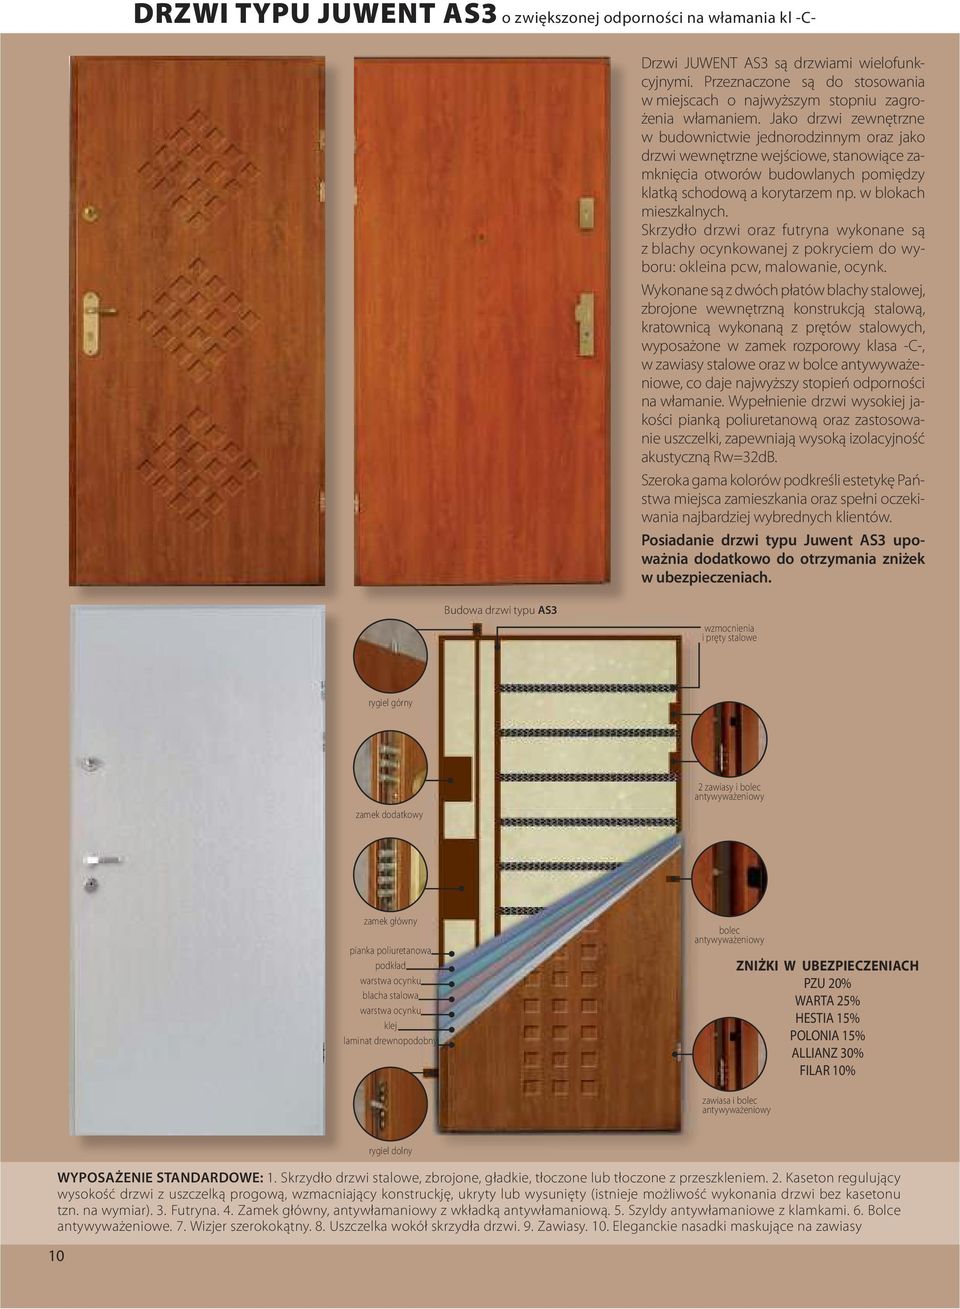 Skrzydło drzwi oraz futryna wykonane są z blachy ocynkowanej z pokryciem do wyboru: okleina pcw, malowanie, ocynk.